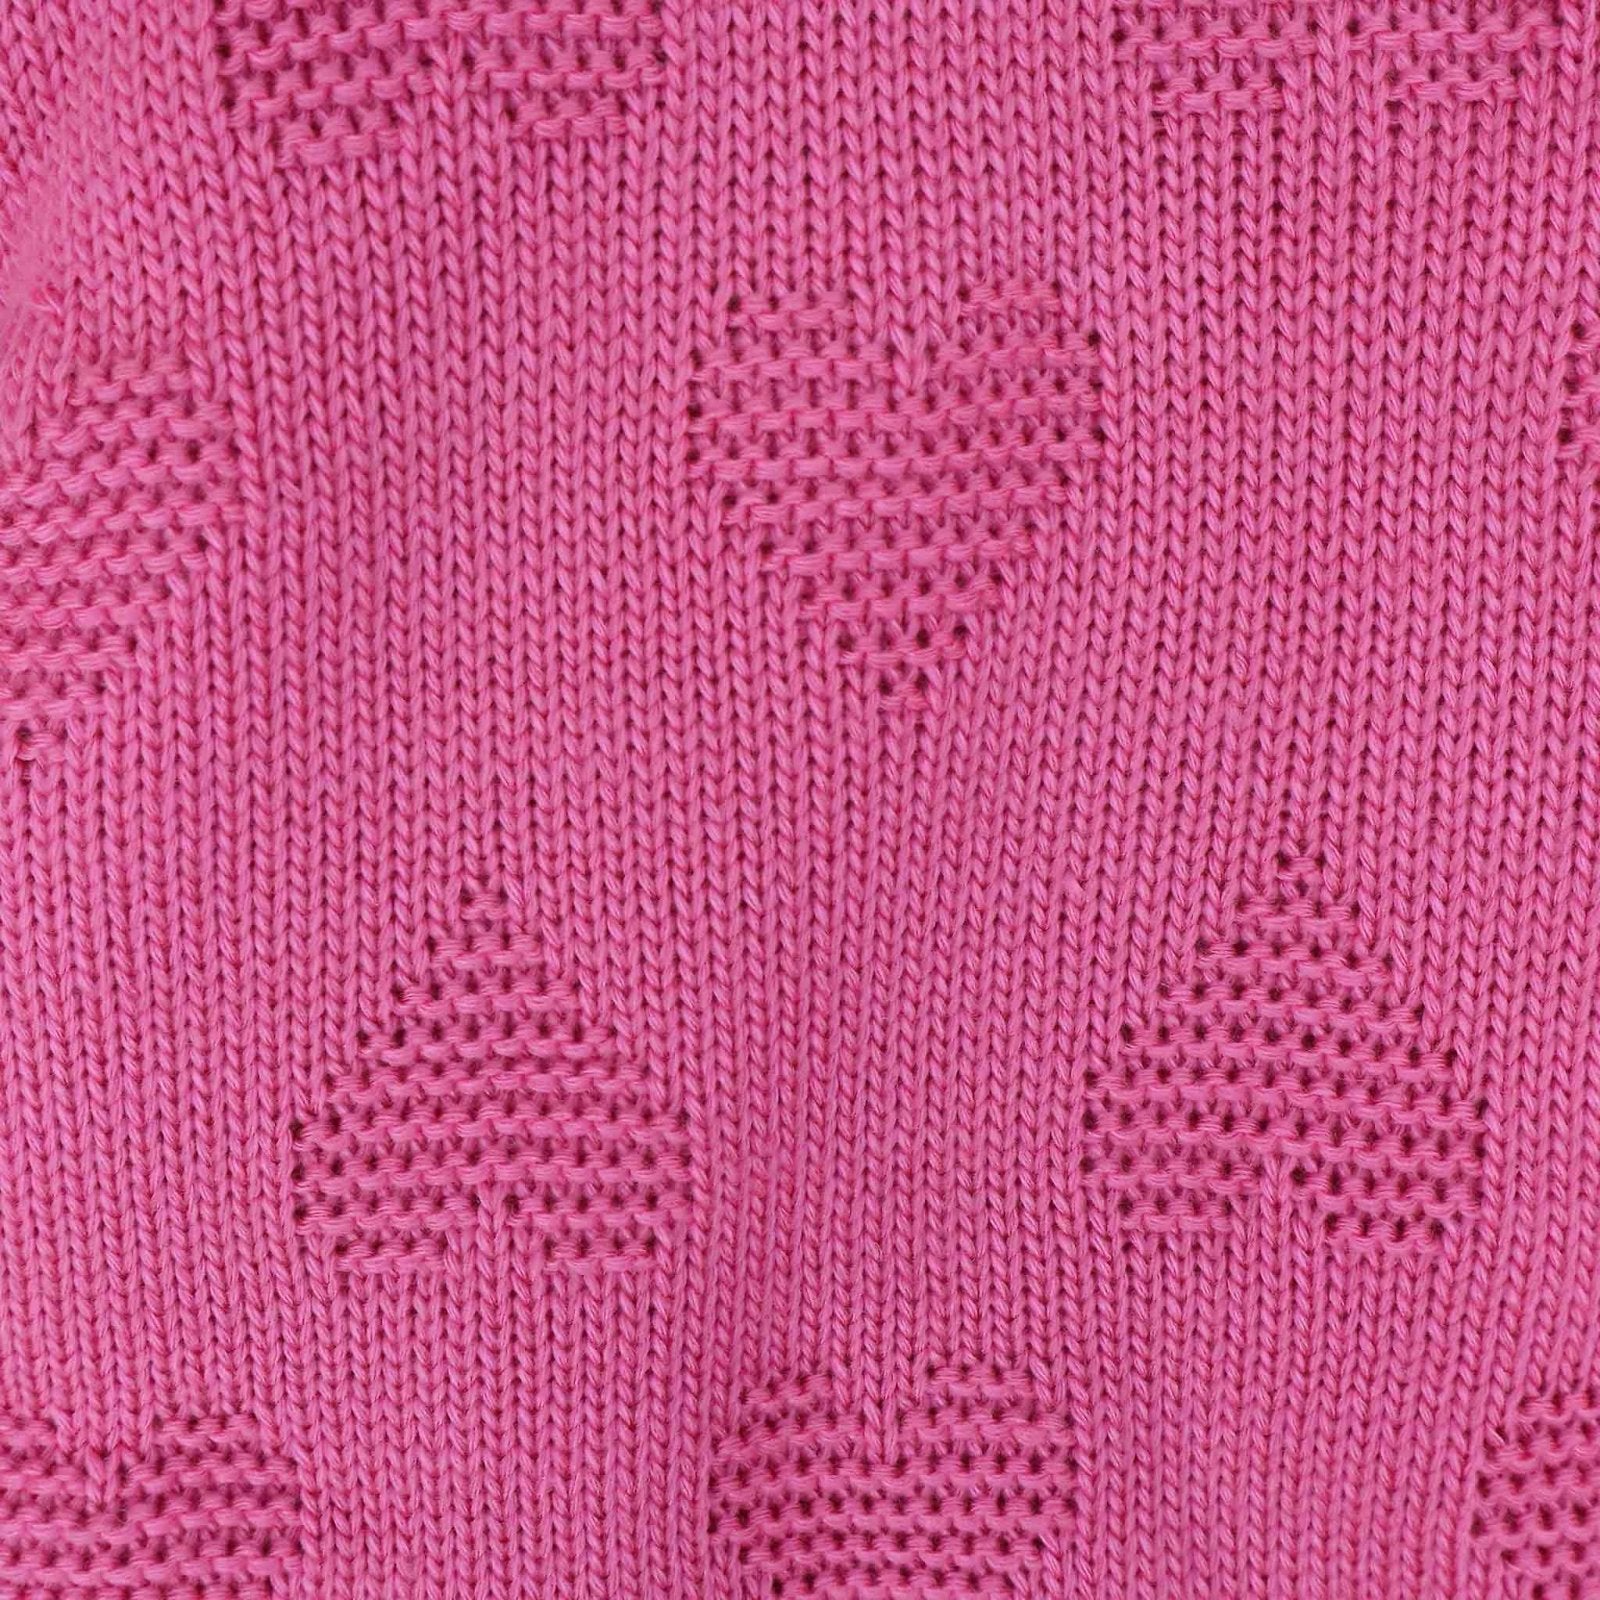 Hooded Woolen Romper Heart Pattern Pink Color by Little Darling